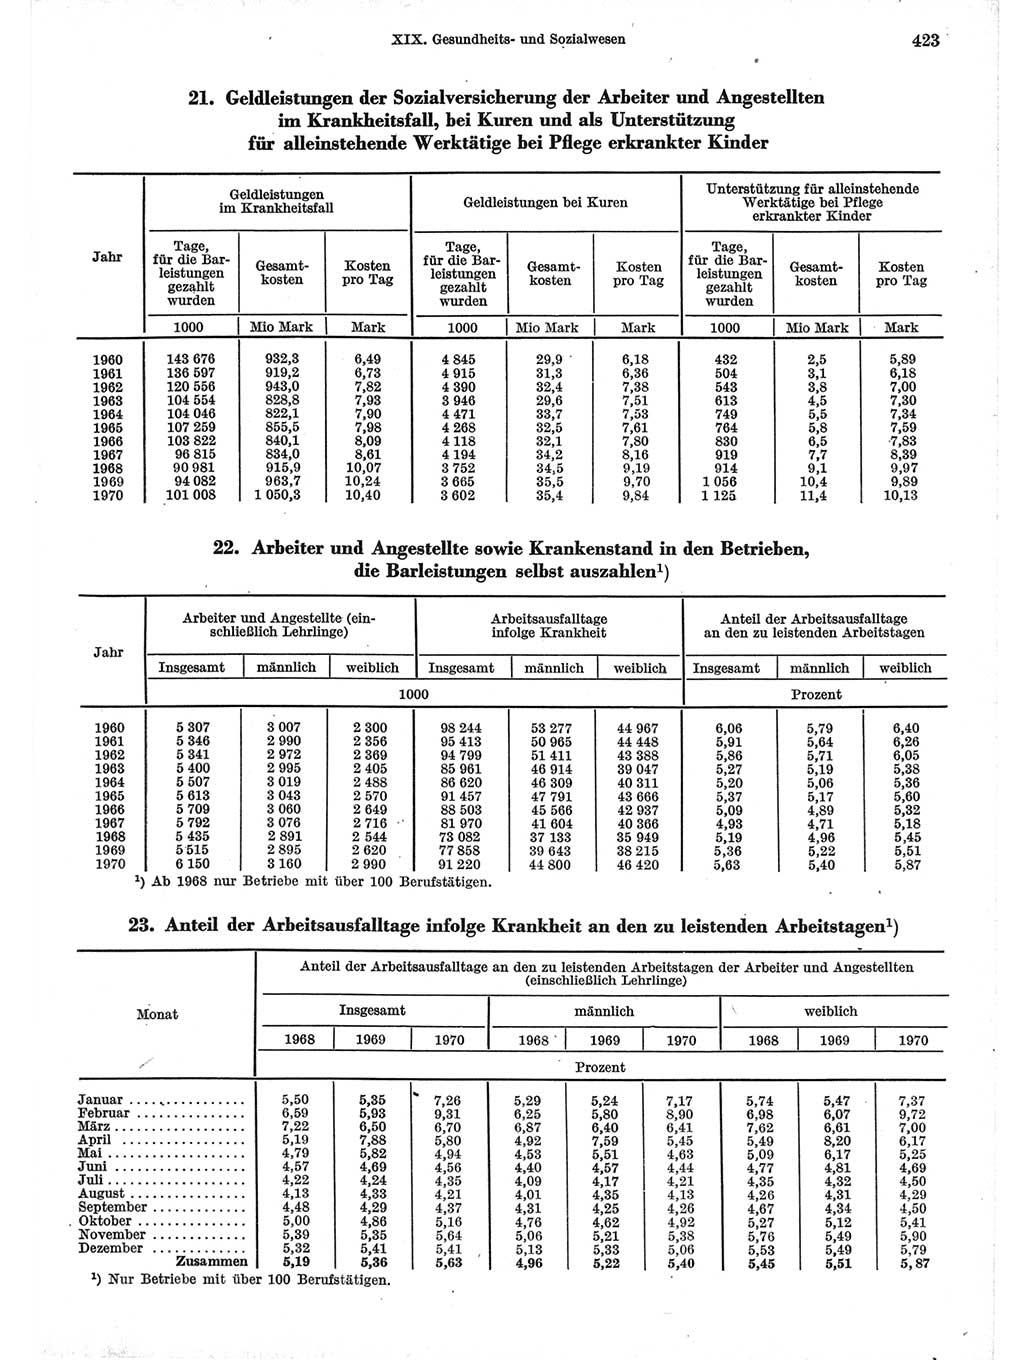 Statistisches Jahrbuch der Deutschen Demokratischen Republik (DDR) 1971, Seite 423 (Stat. Jb. DDR 1971, S. 423)